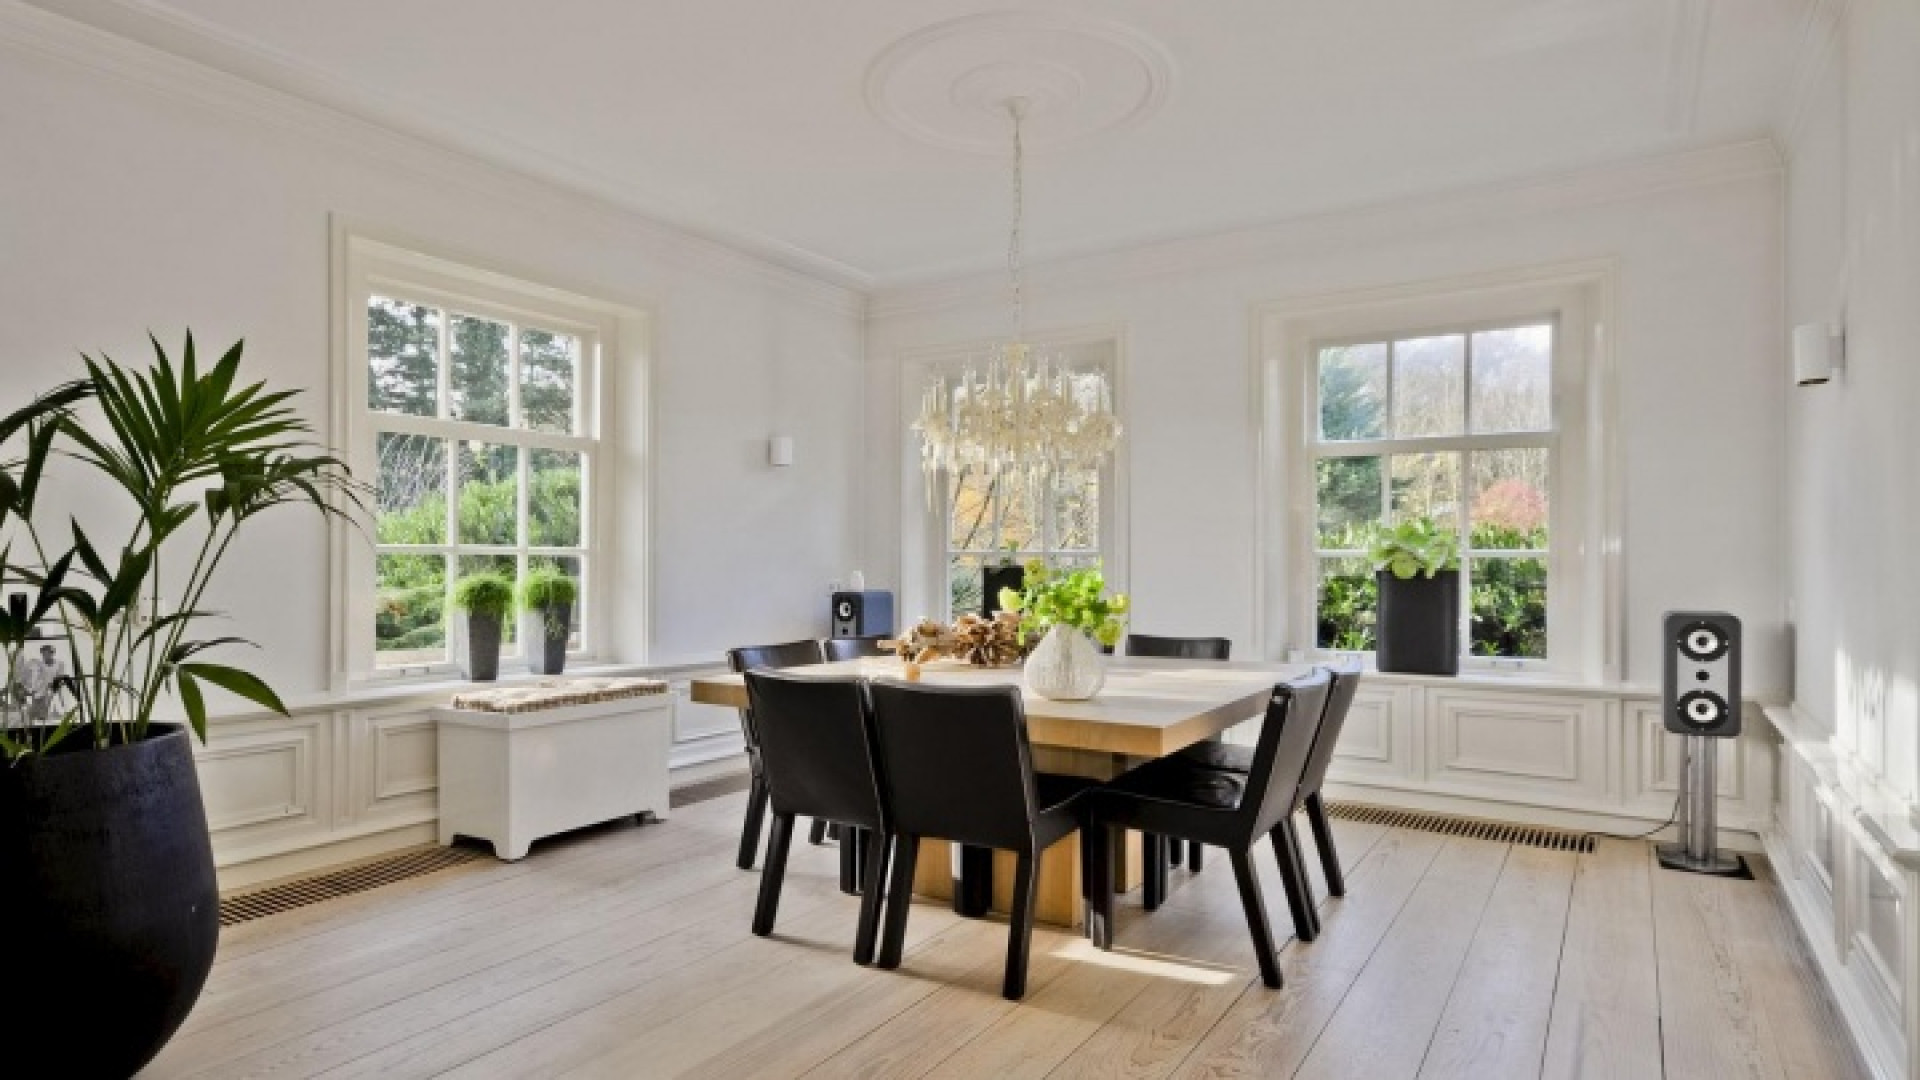 Henny Huisman verkoopt zijn villa zwaar onder de vraagprijs. Zie foto's 8